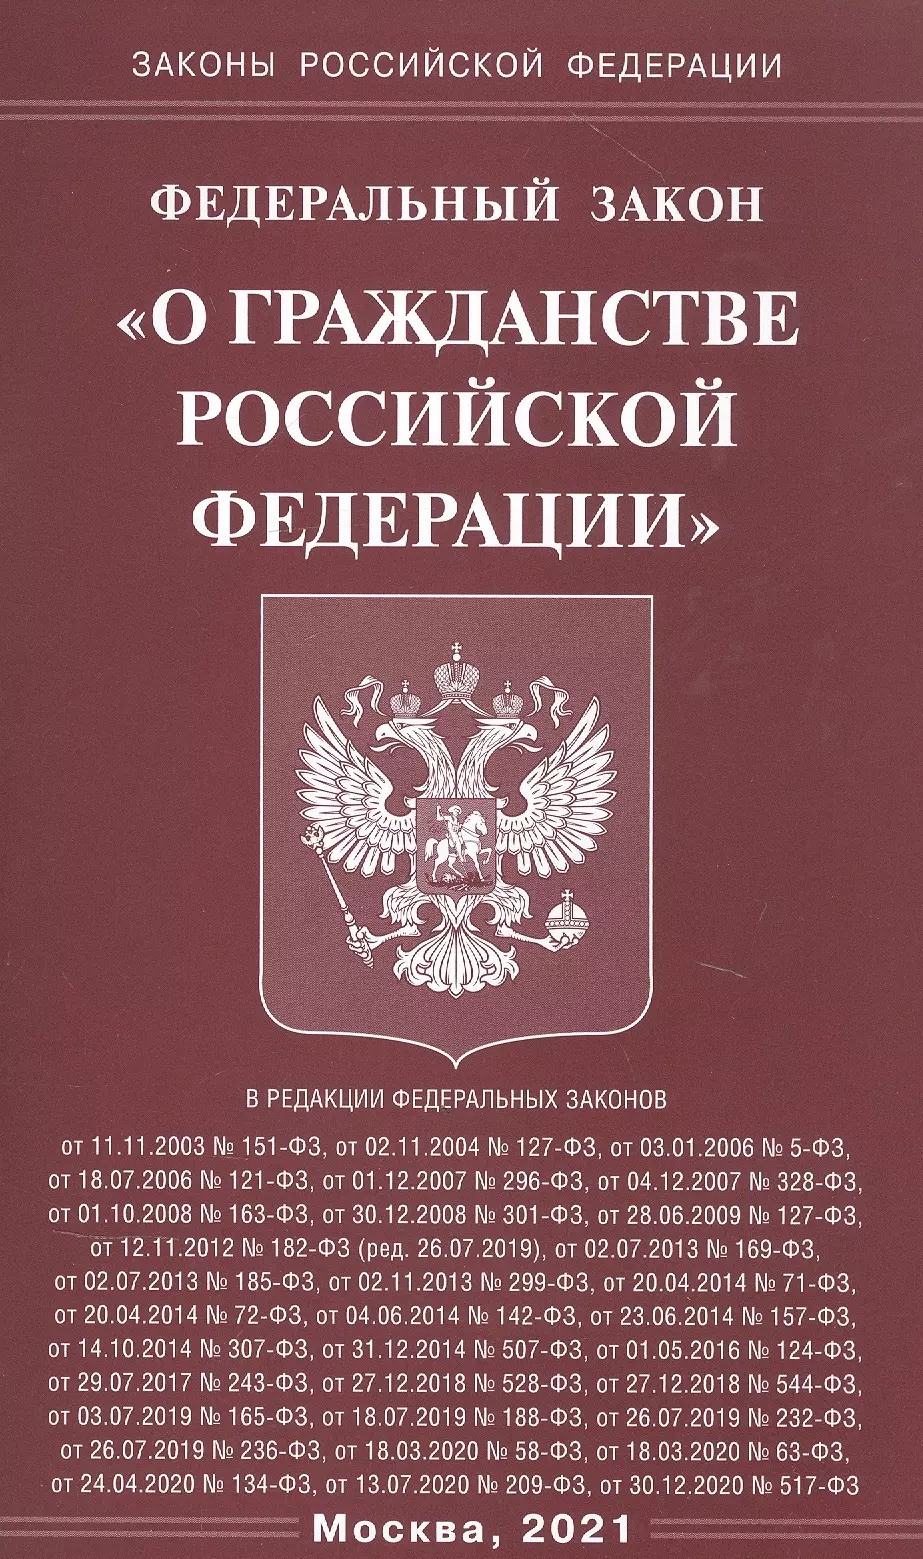  - Федеральный закон "О гражданстве Российской Федерации"